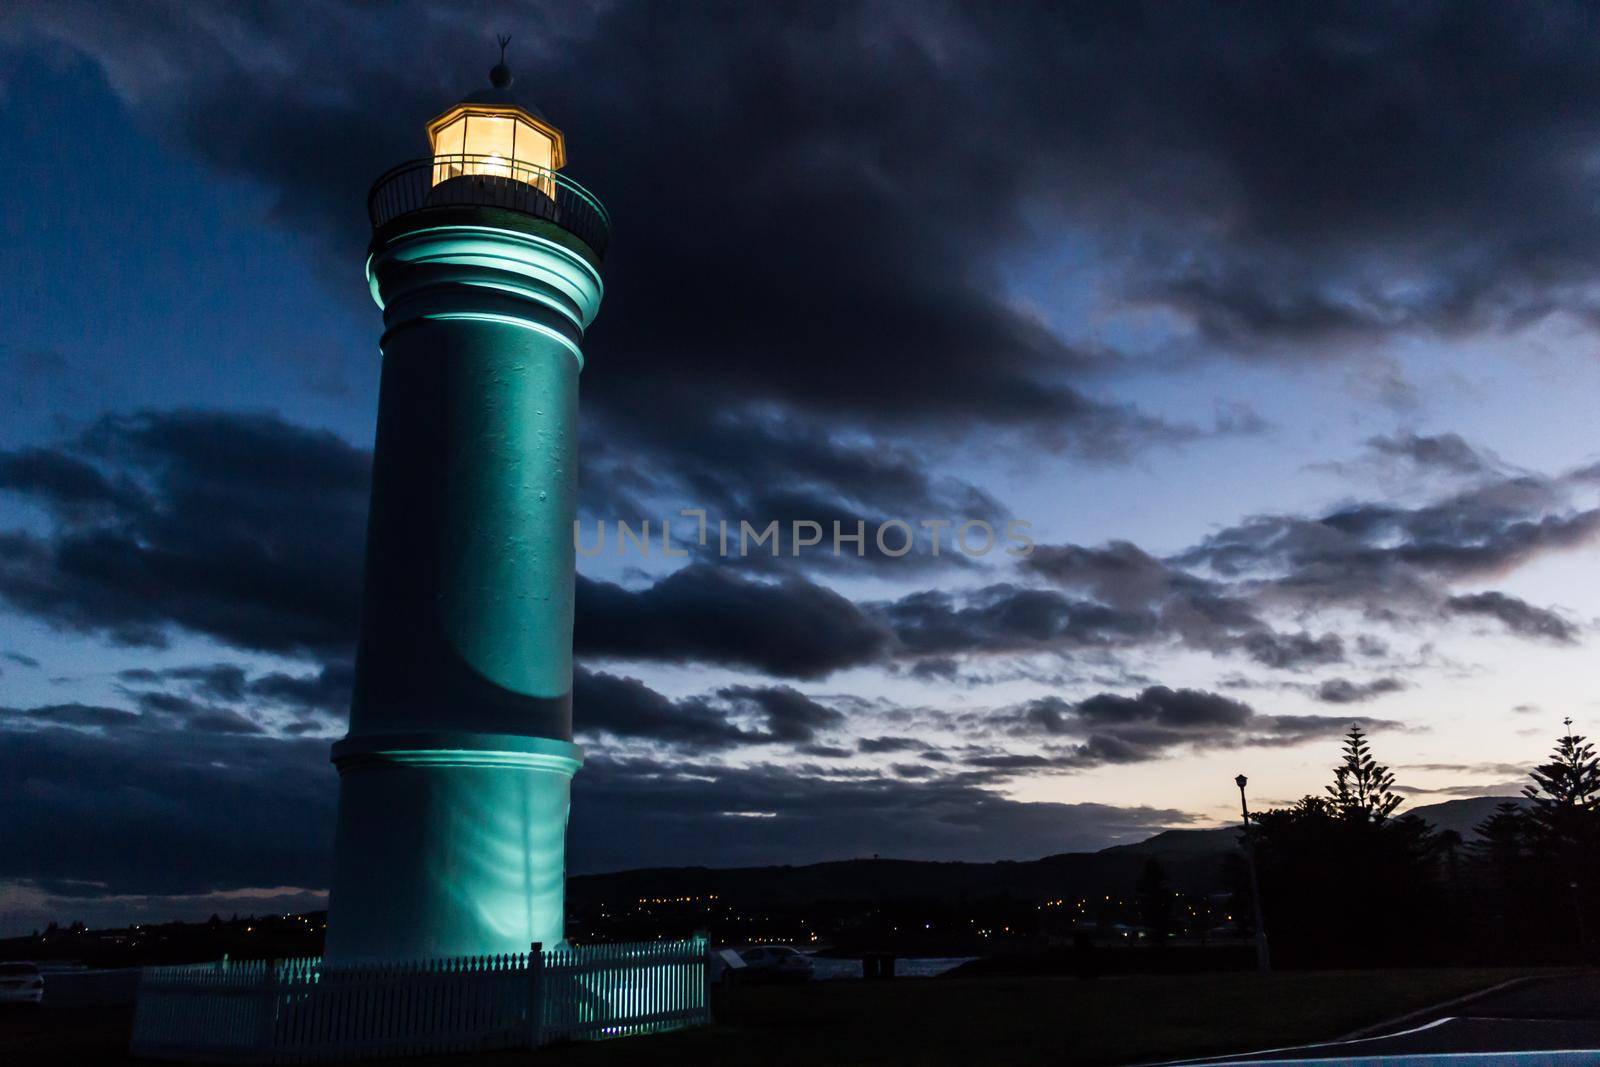 Kiama Lighthouse at sunset, Kiama, NSW, Australia by bettercallcurry